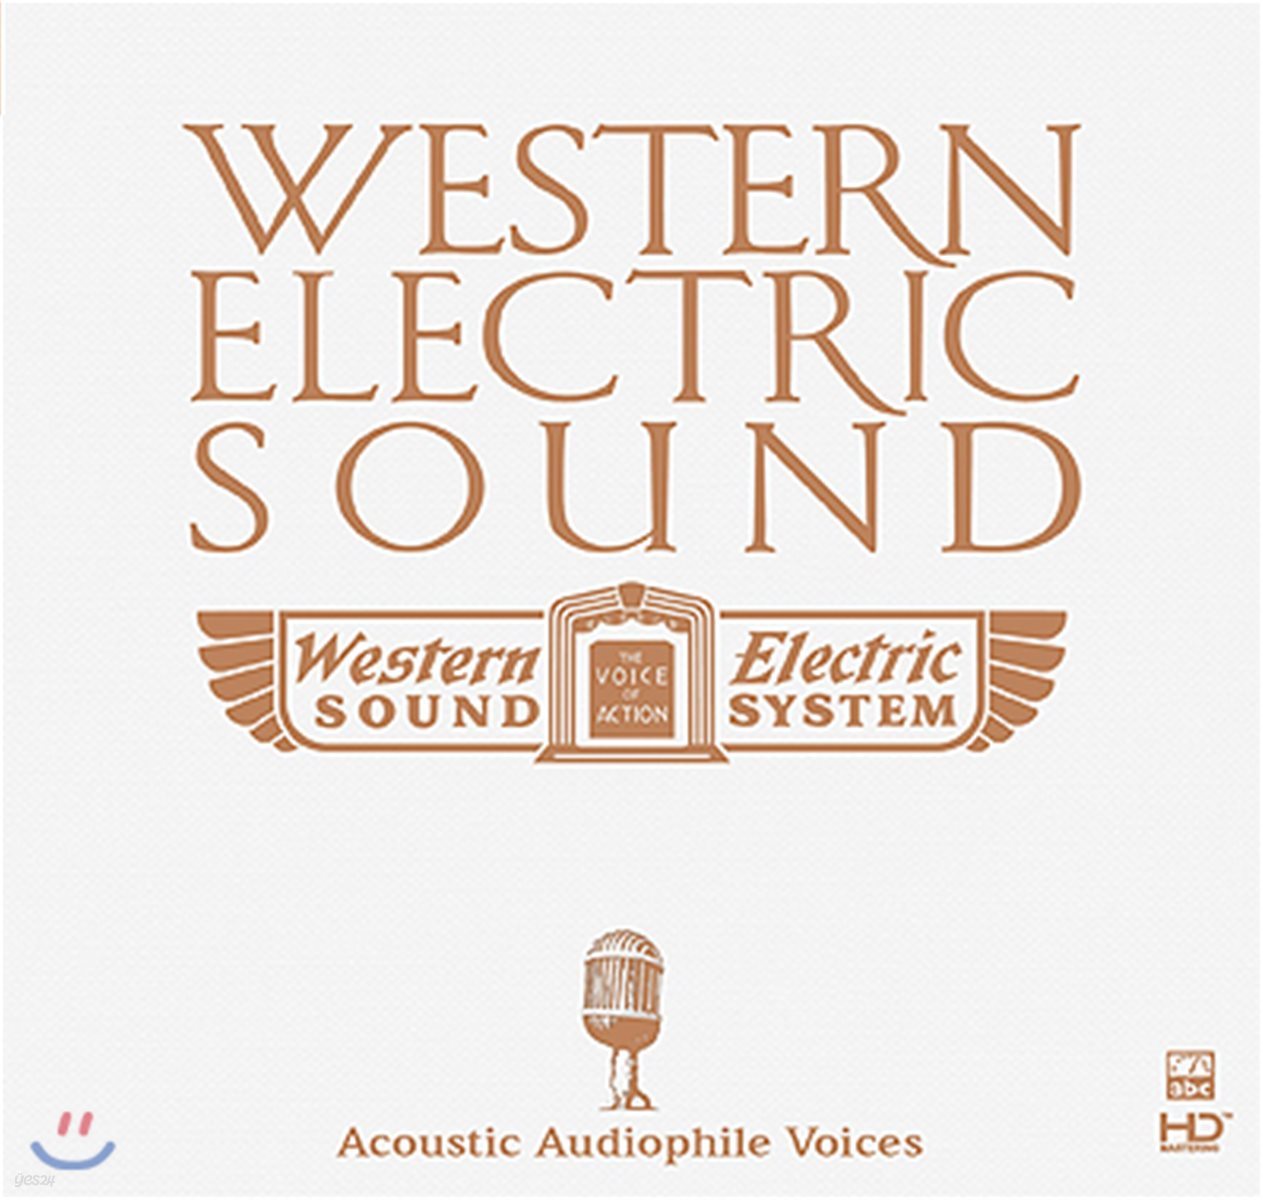 재즈, 팝 고음질 음악 모음집 (Western Electric Sound : Acoustic Audiophile Voices 2)